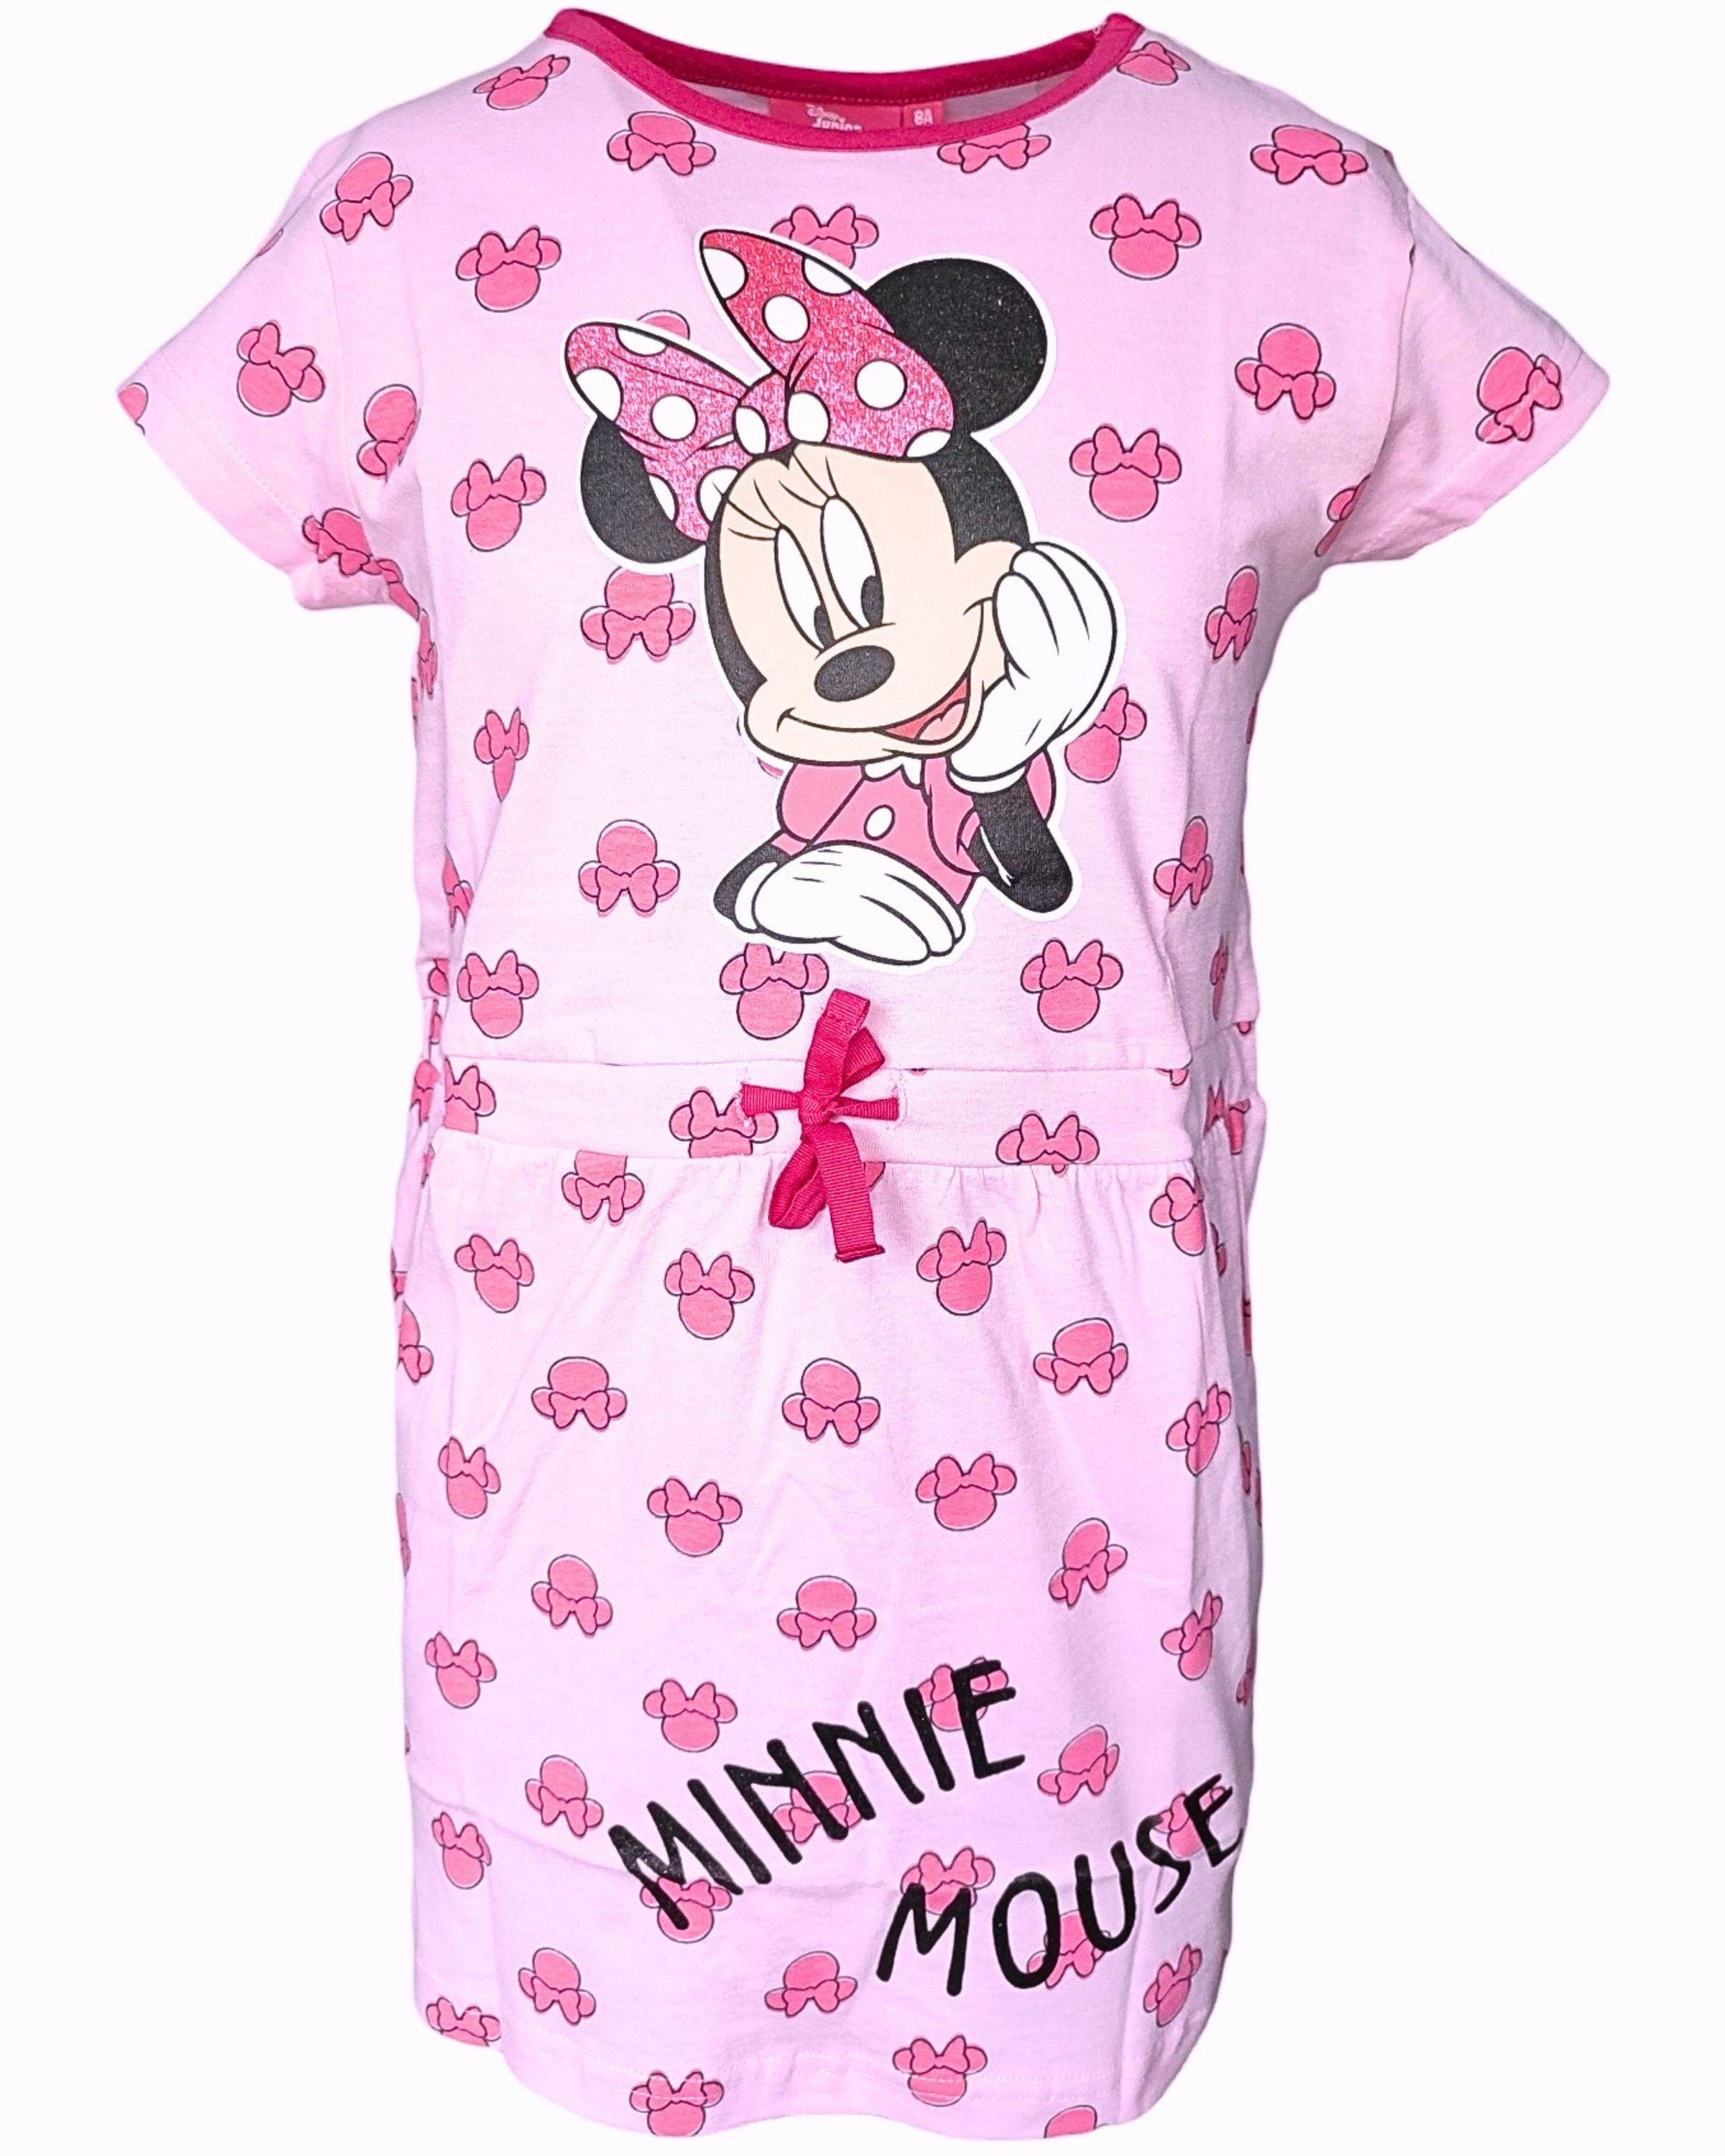 Disney Minnie Mouse Sommerkleid Minnie Maus Jerseykleid mit Glitzer für Mädchen Gr. 98-128 cm Rosa